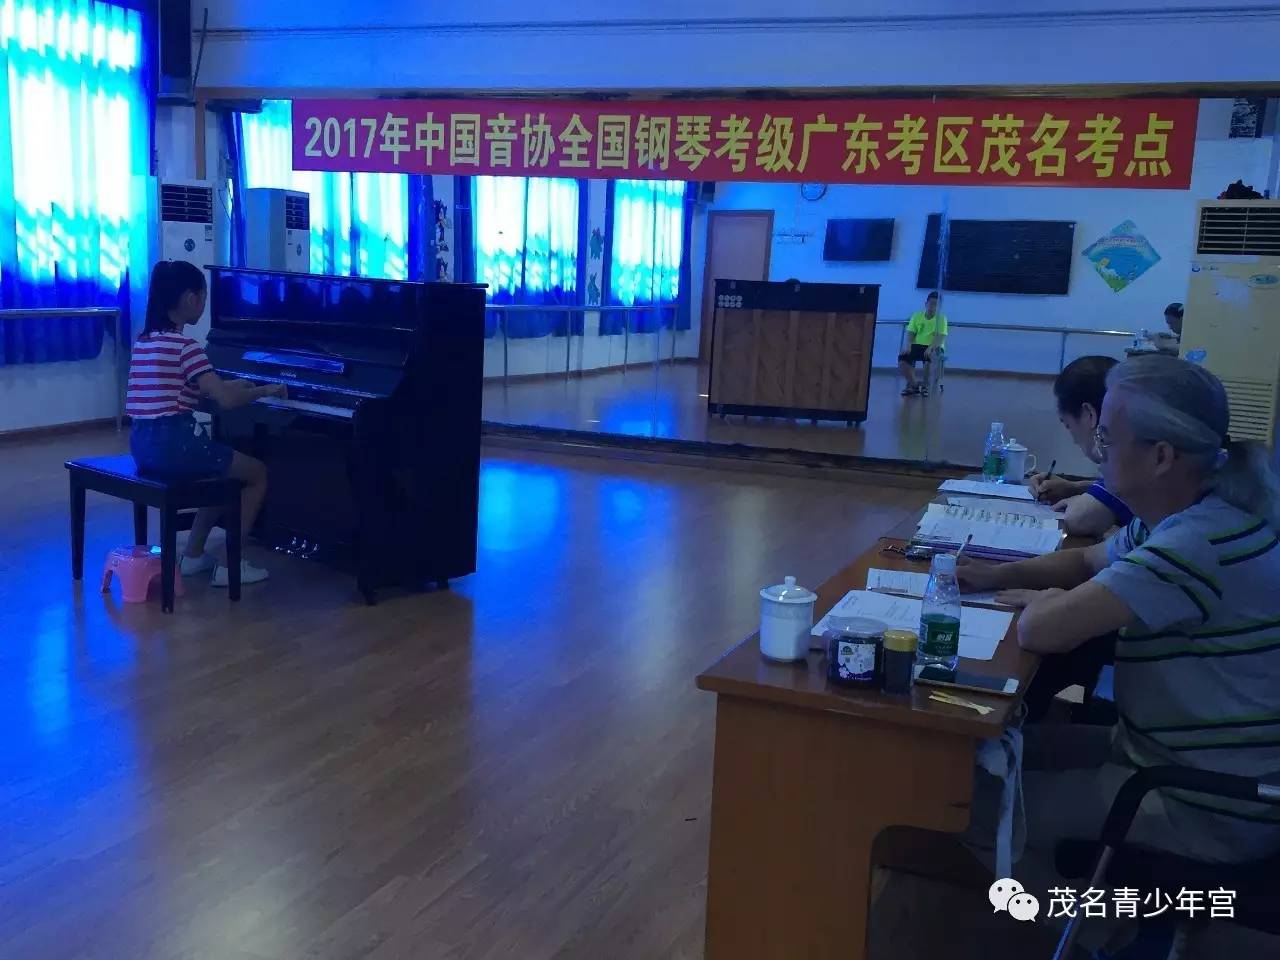 2017年中国音协全国钢琴考级圆满结束